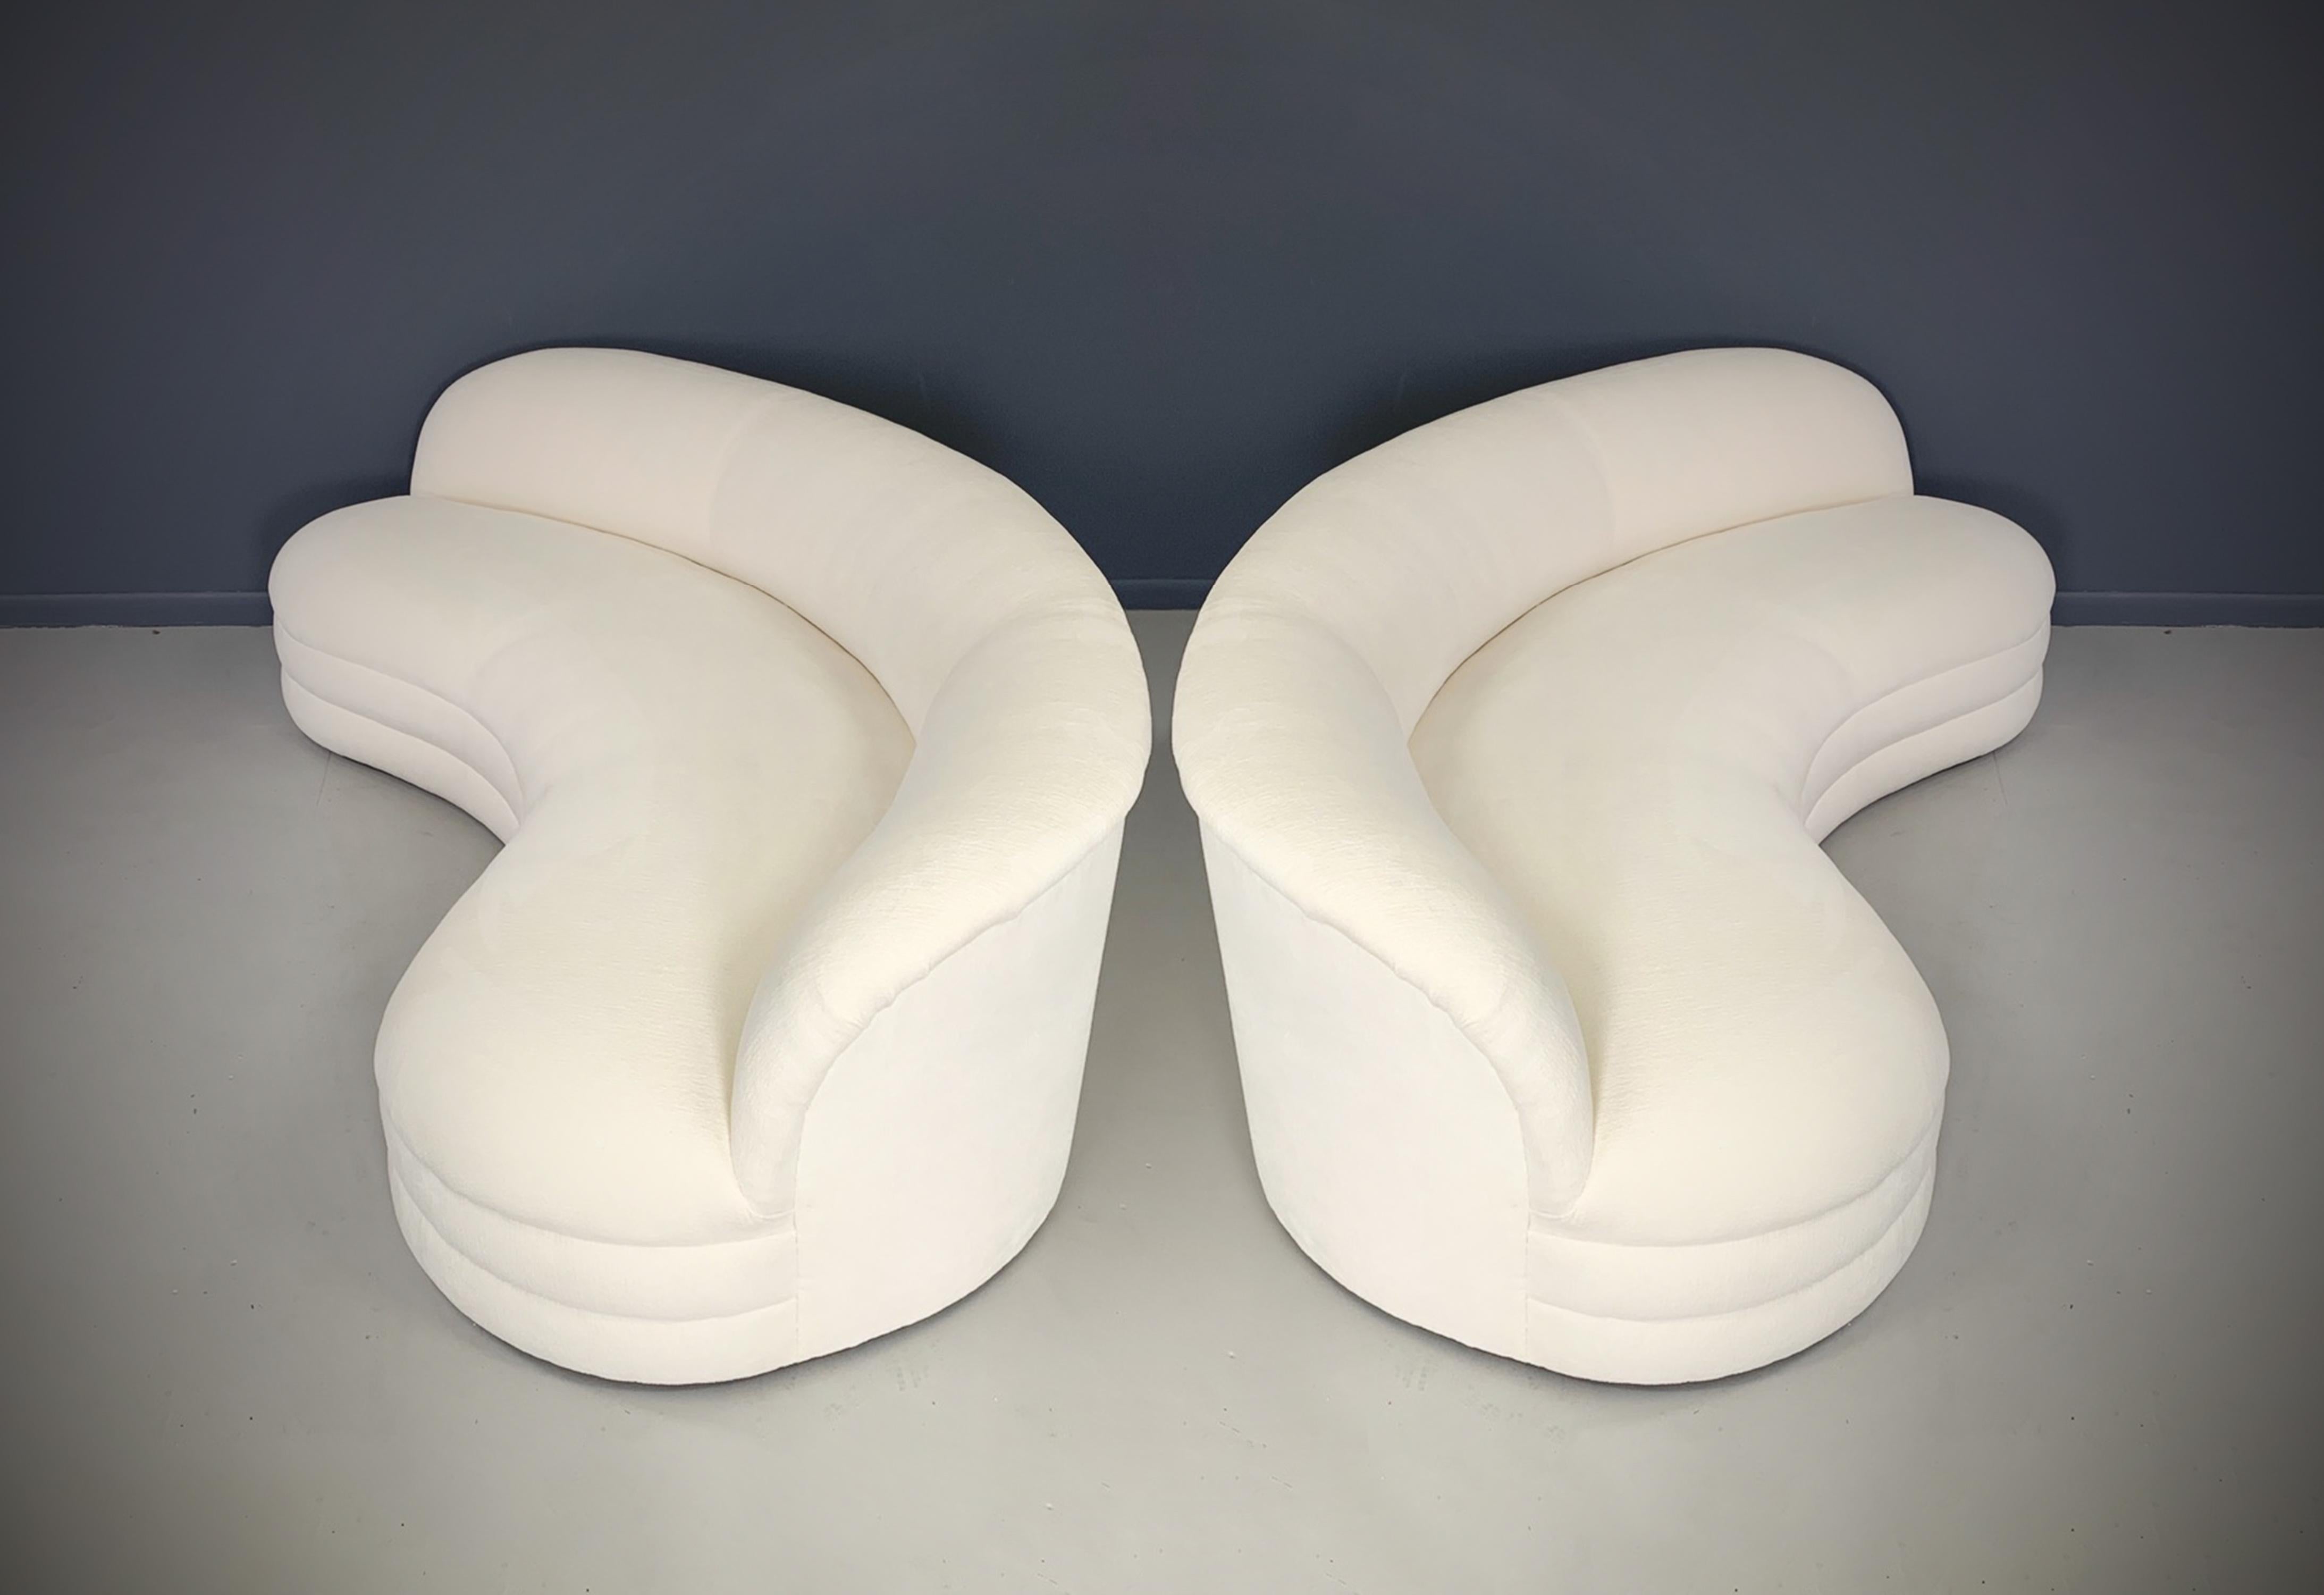 Ein Paar nierenförmiger Sofas hat ein schönes, skulpturales, modernes Design mit einer gebogenen Rückenlehne. Diese Sofas werden neu produziert und sind handgefertigt mit einem massiven Hartholzrahmen, hergestellt in den Vereinigten Staaten mit